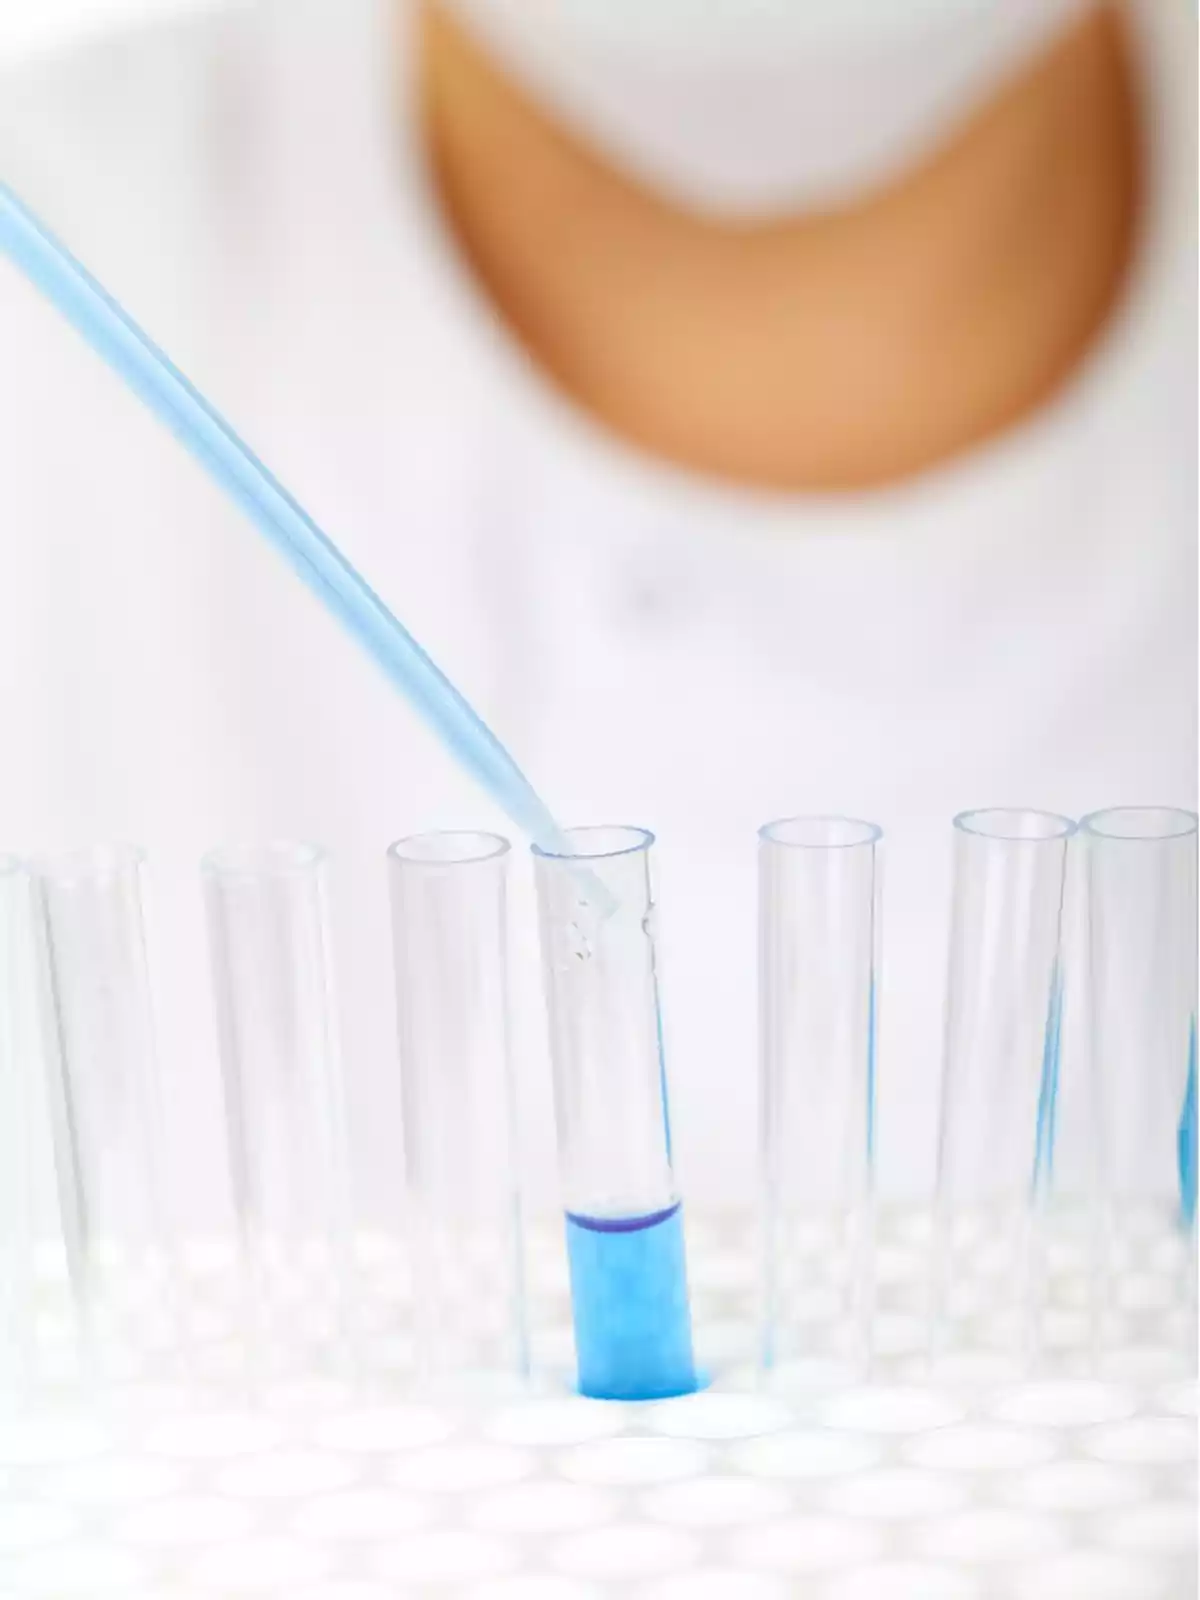 Persona usando una pipeta para transferir líquido azul a un tubo de ensayo en un laboratorio.